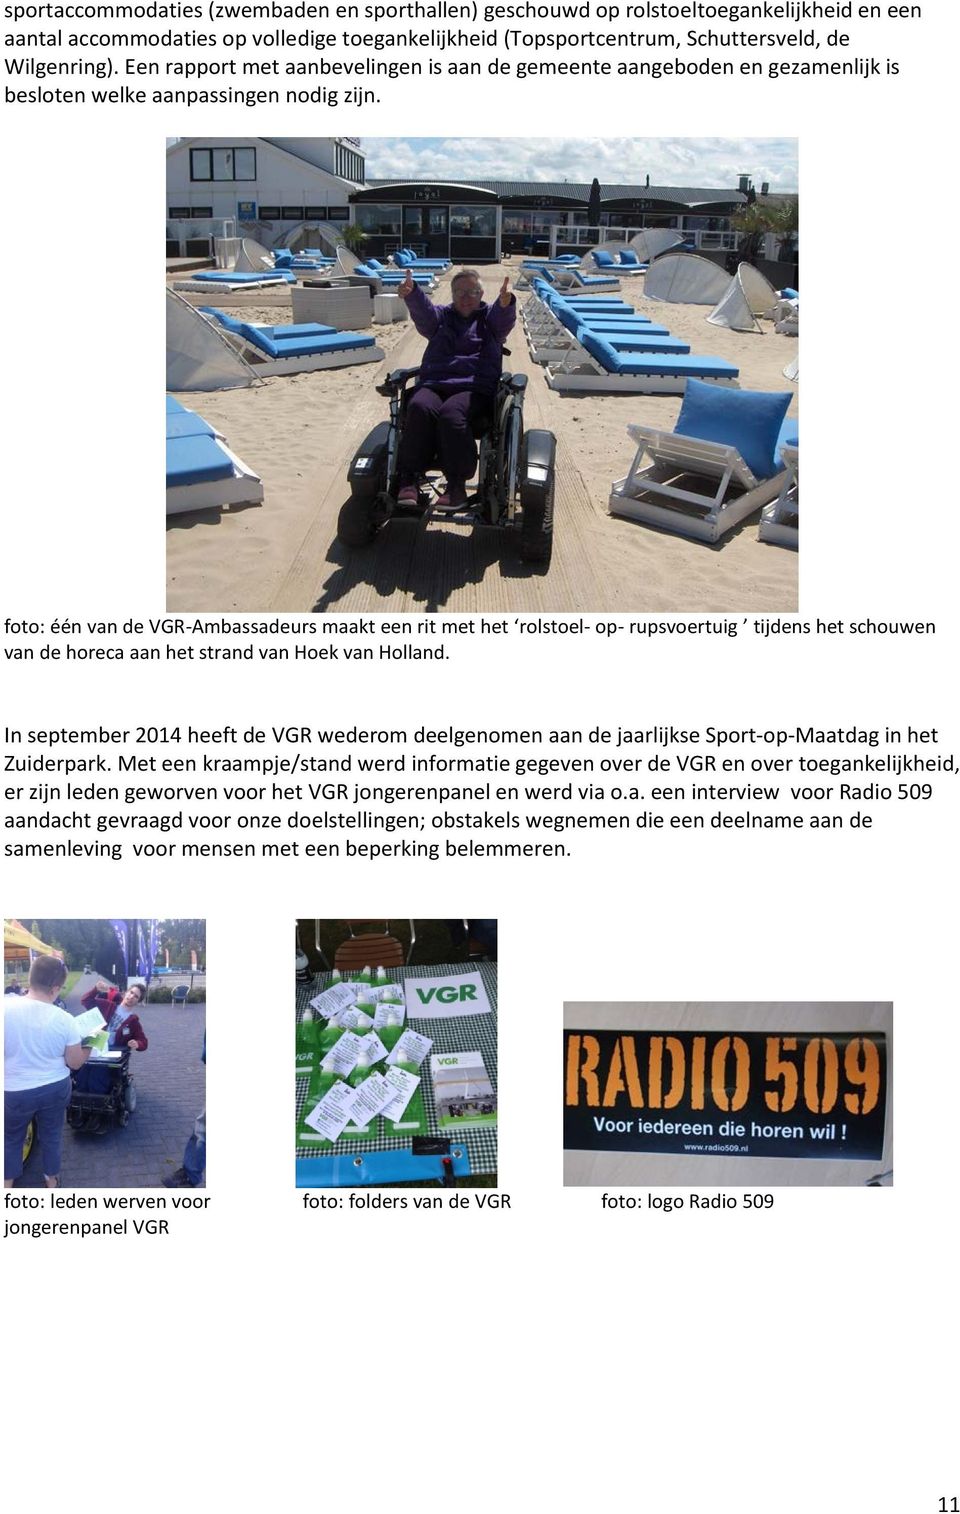 foto: één van de VGR-Ambassadeurs maakt een rit met het rolstoel- op- rupsvoertuig tijdens het schouwen van de horeca aan het strand van Hoek van Holland.